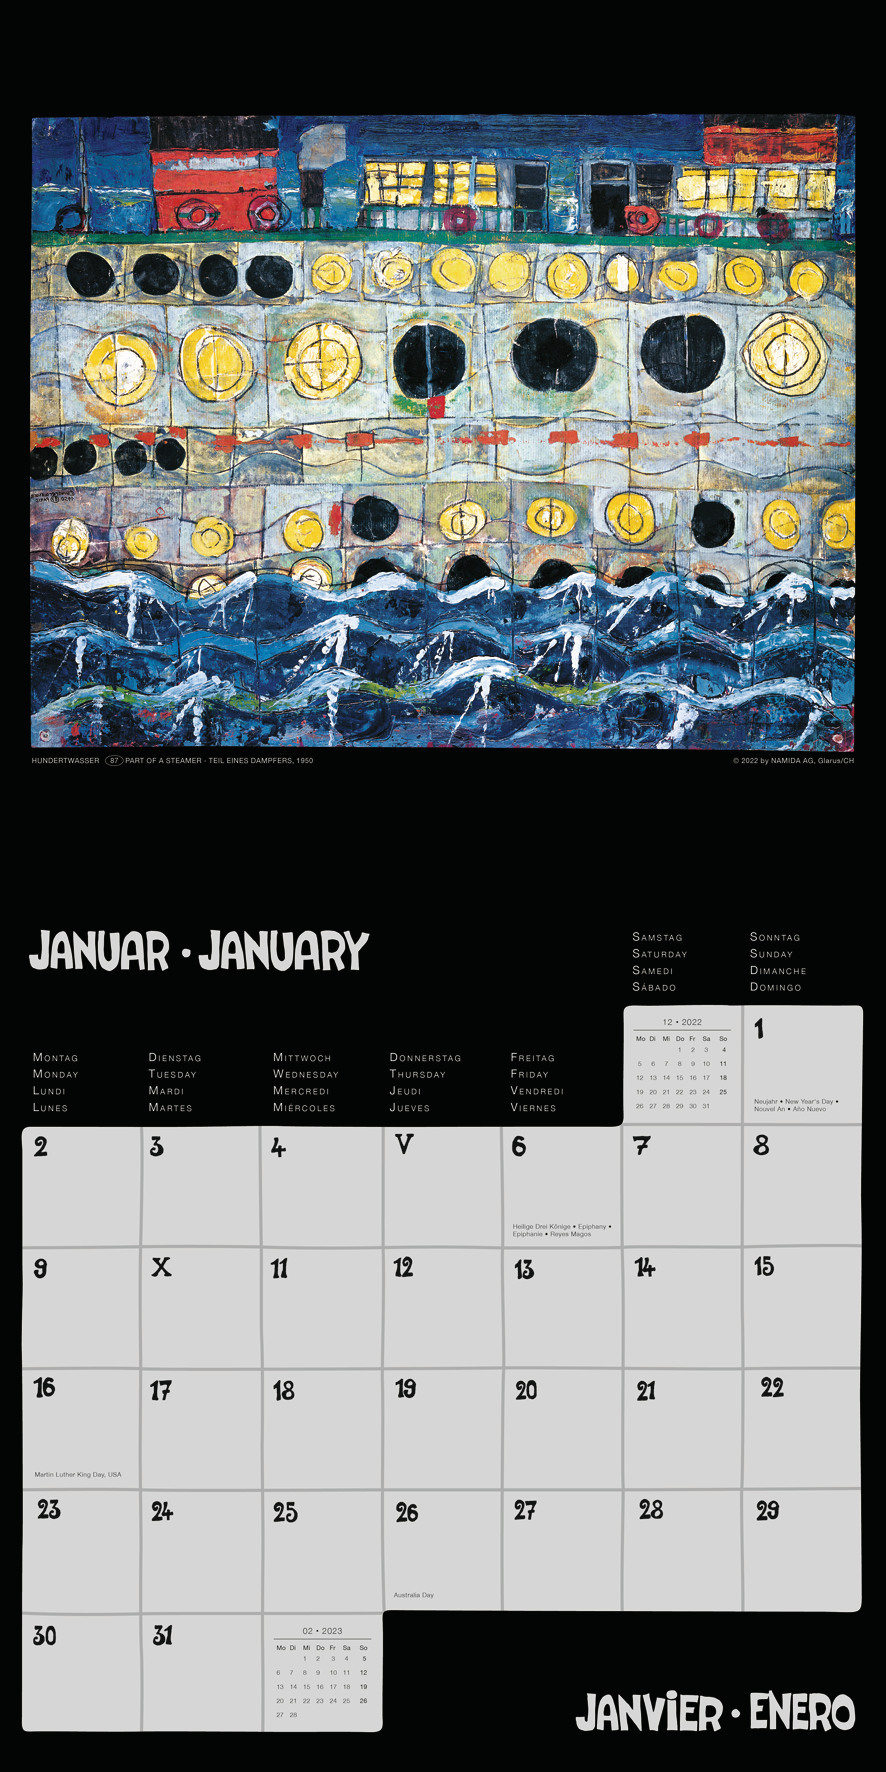 Hundertwasser Broschürenkalender Art 2023